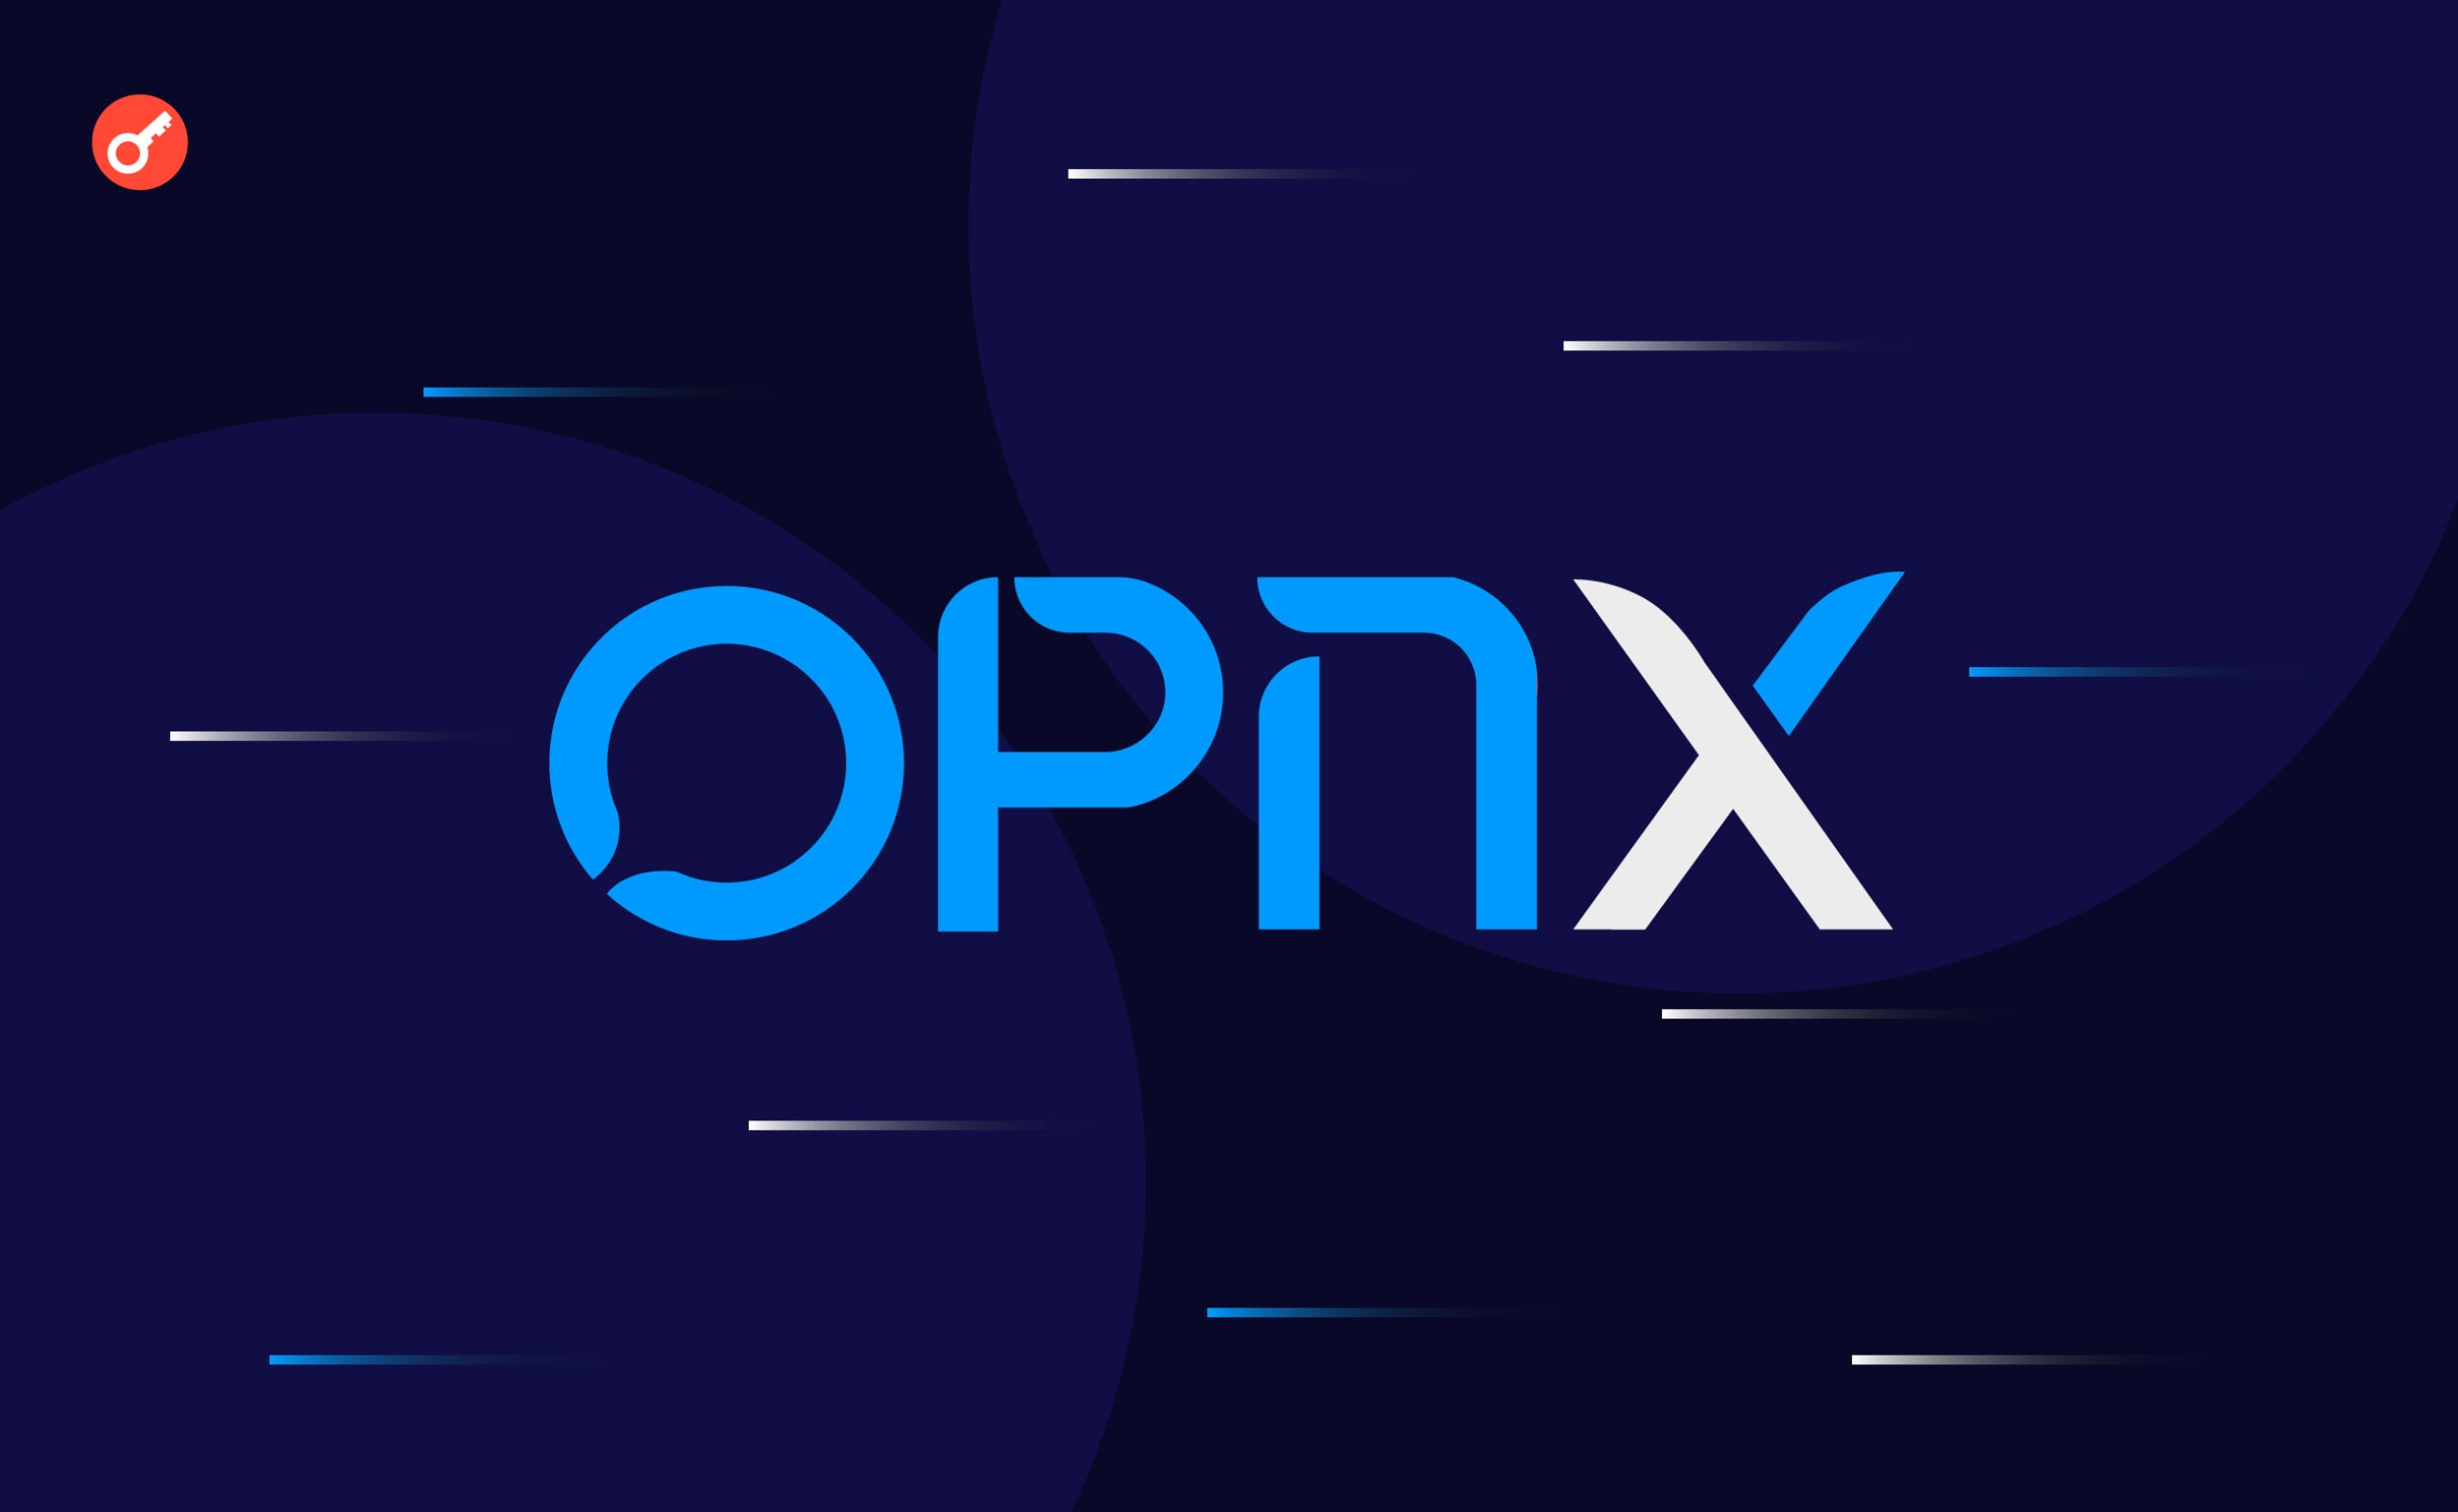 4 апреля, состоялся релиз платформы OPNX. Напомним, проект создан основателями 3AC и CoinFLEX в целях «продвижения криптографии». 